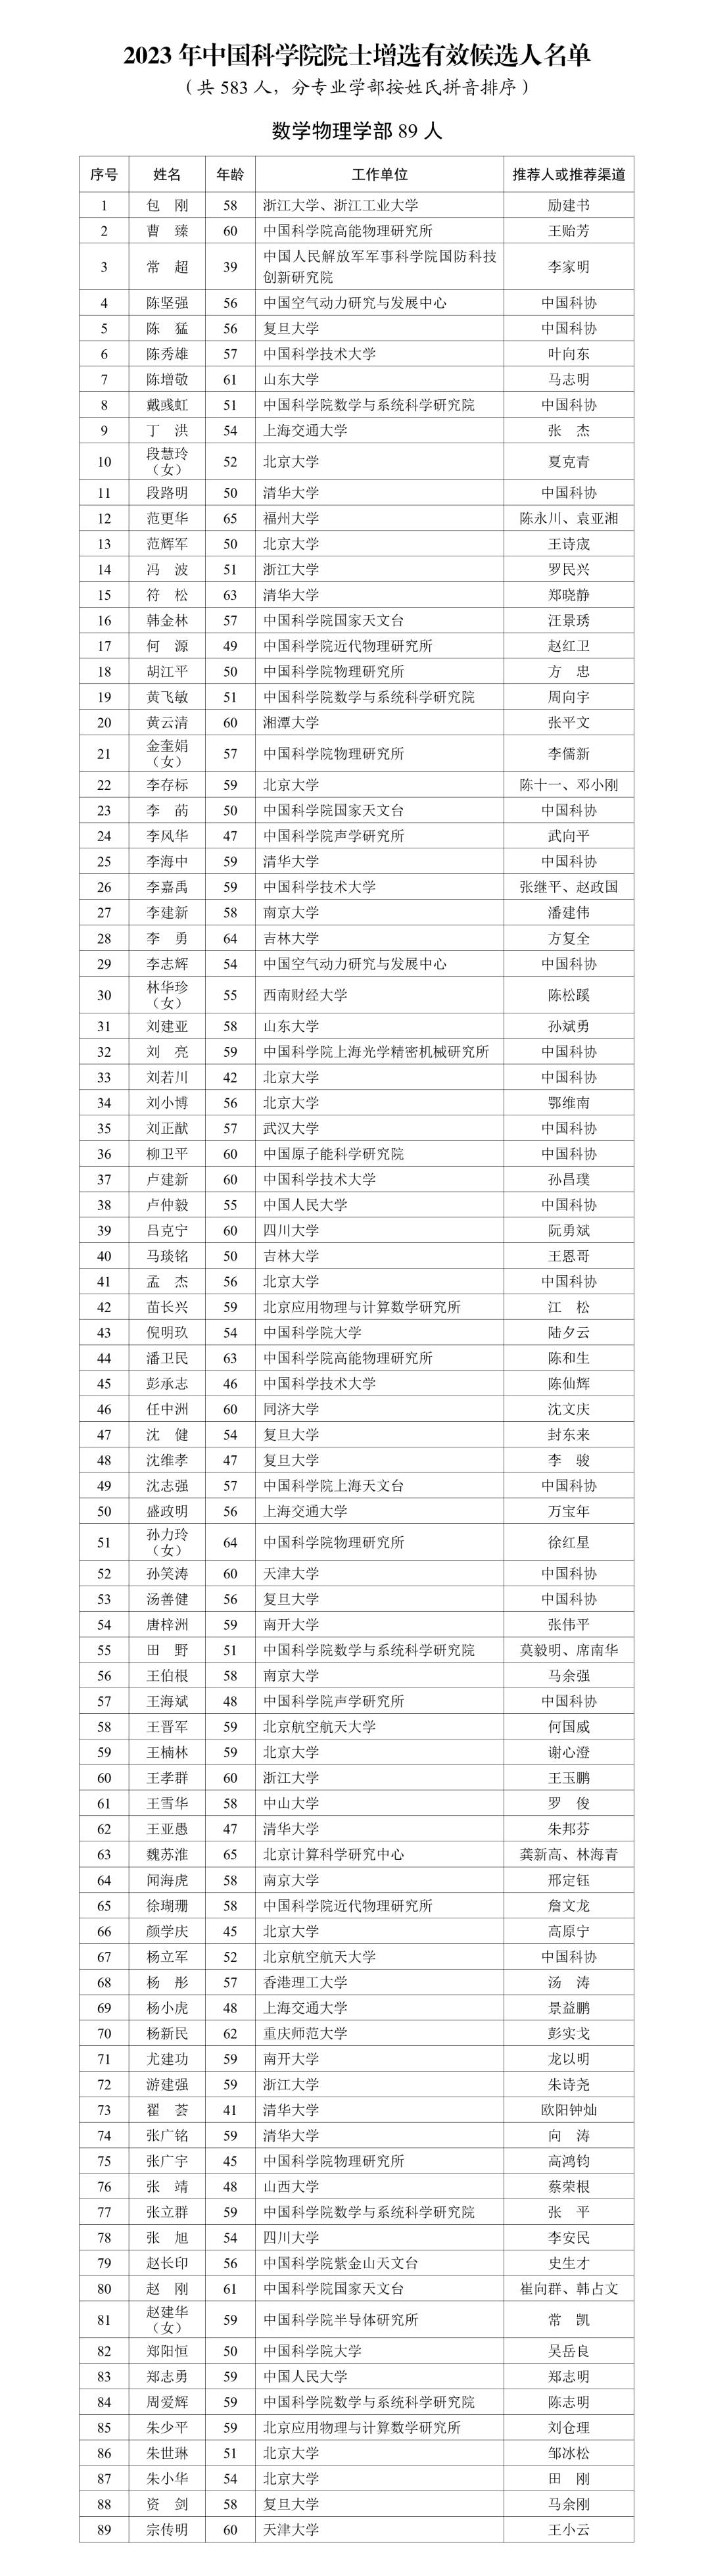 2023 年中国科学院、中国工程院院士增选有效候选人名单公布